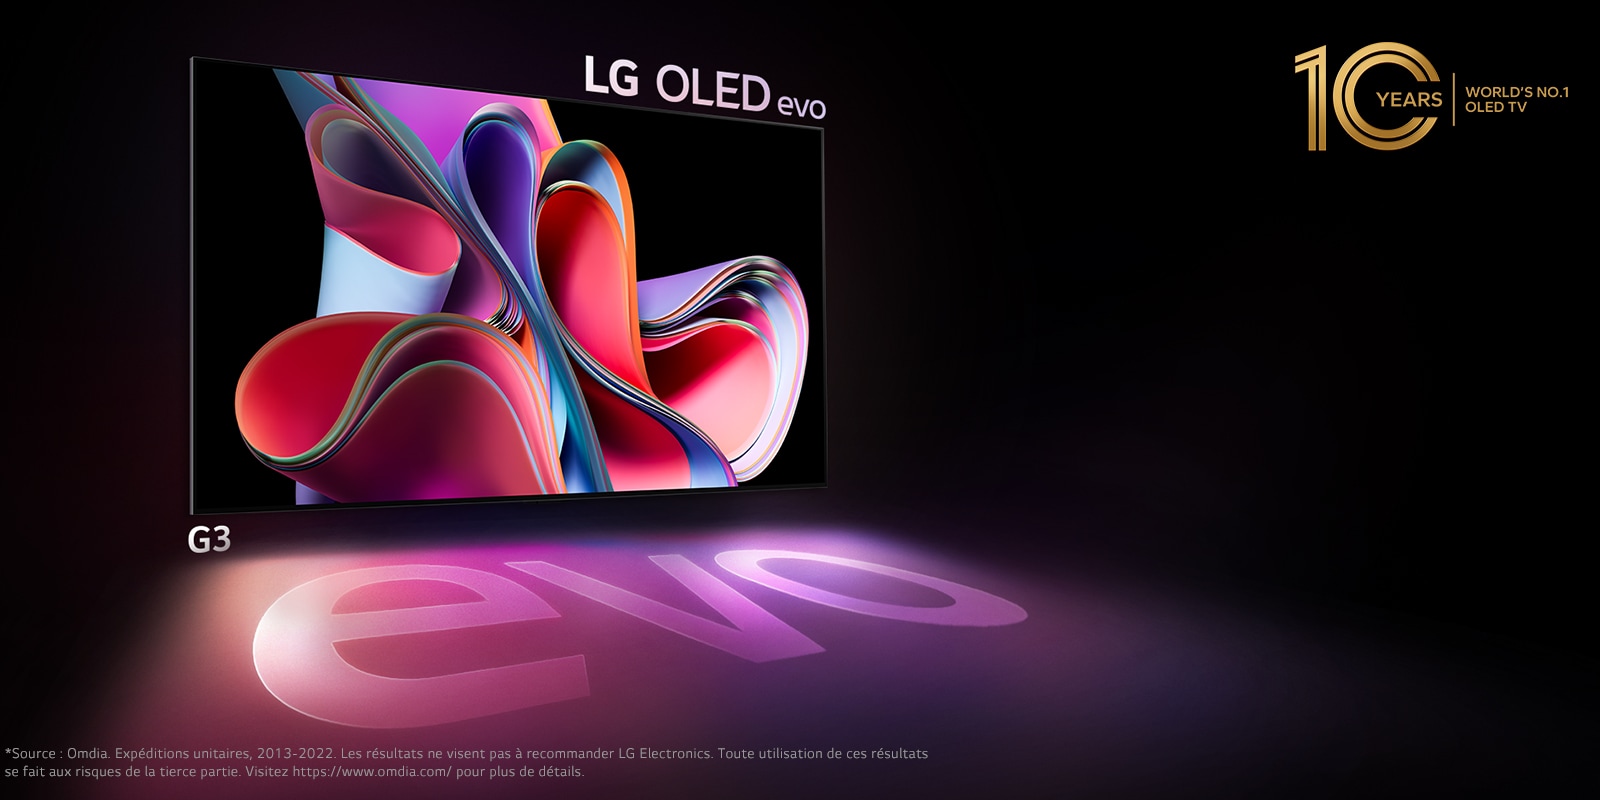 Image du LG OLED G3 sur un fond noir montrant une œuvre d’art abstraite rose vif et violette. L’écran projette une ombre colorée sur laquelle figure le mot « evo ». Le logo « Le numéro 1 mondial des téléviseurs OLED depuis 10 ans » se trouve en haut et à gauche de l’image. 